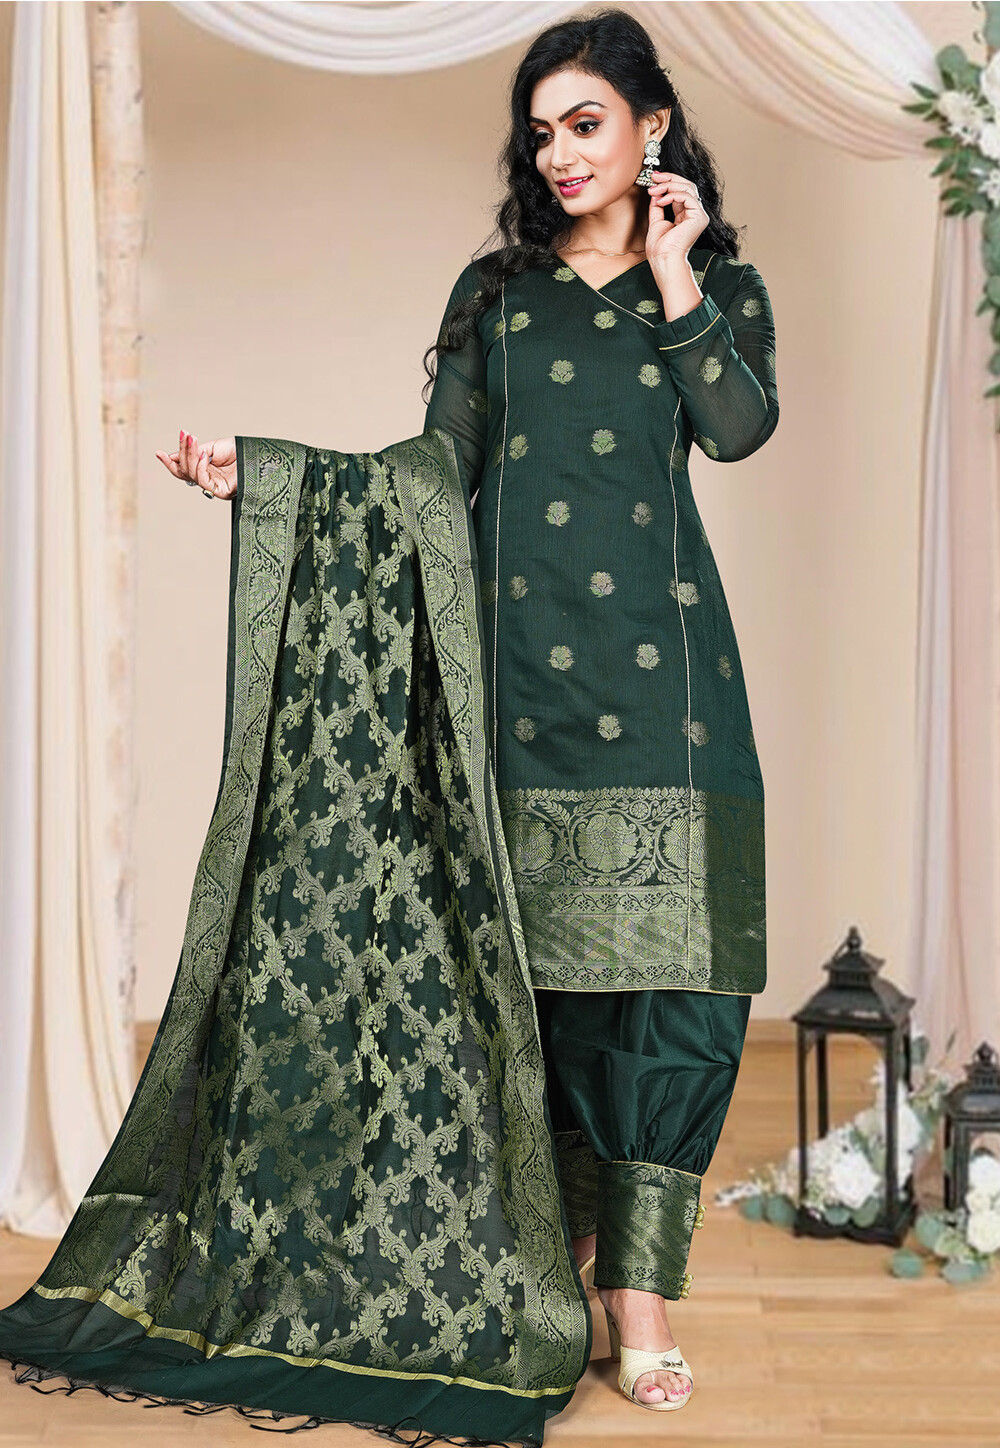 PATIYALA New Designer Cotton Punjabi Salwar Suit at Rs 799/piece in Surat